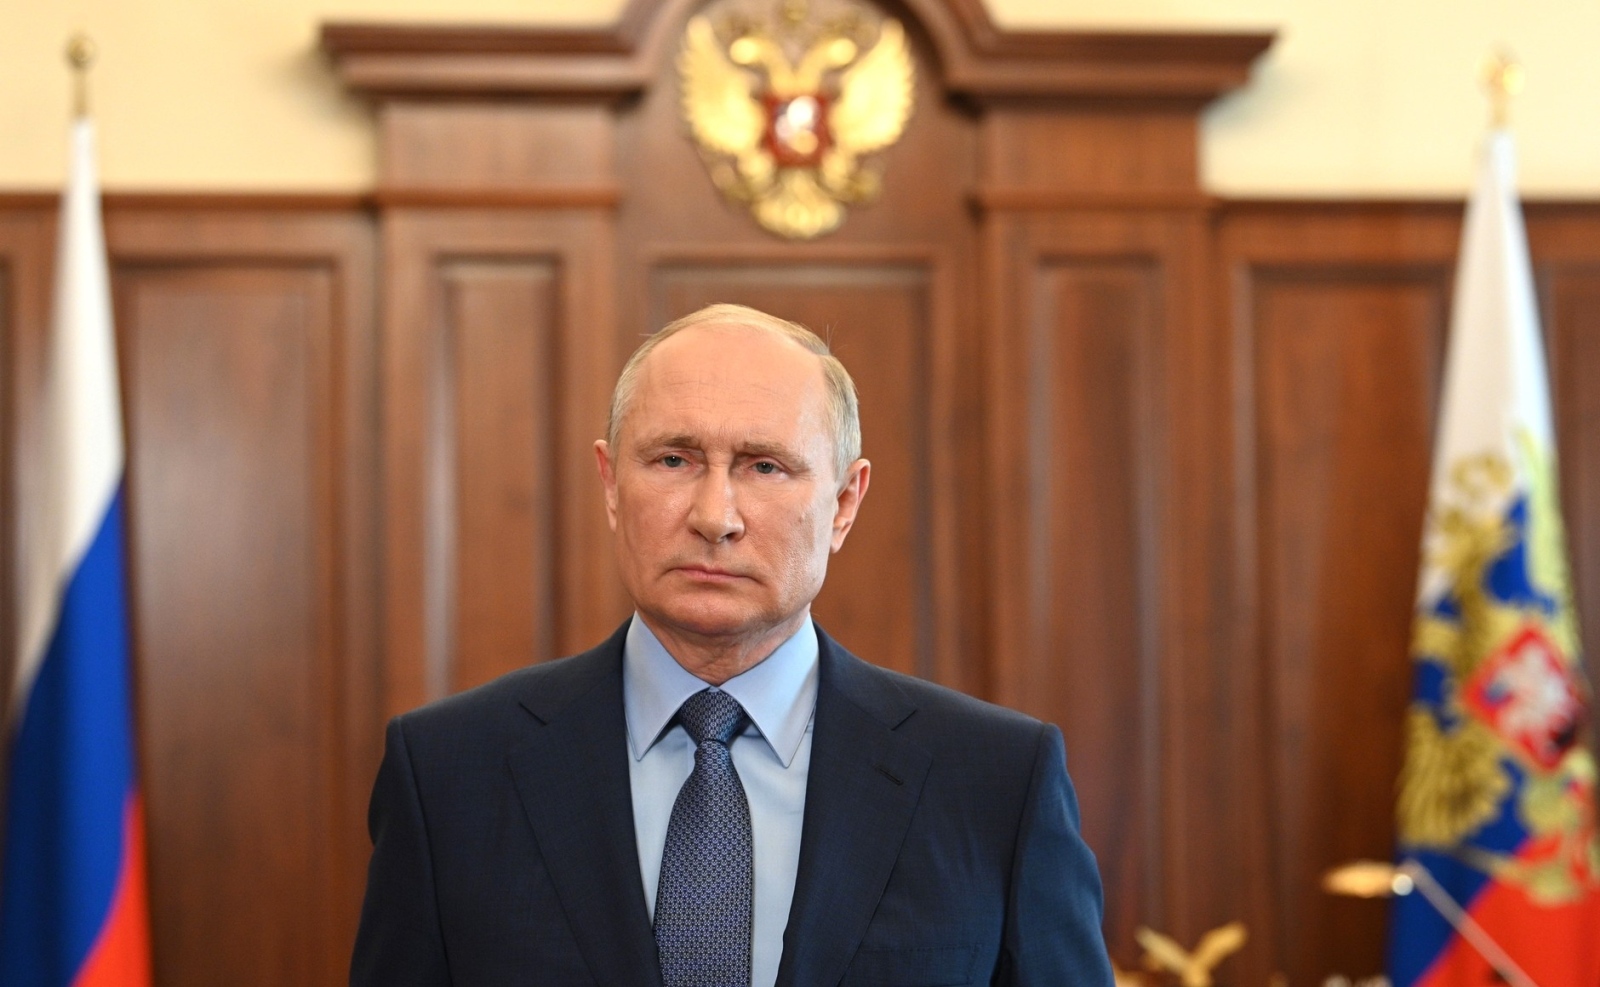 Украйна нарушава правата на човека това каза руският президент Владимир